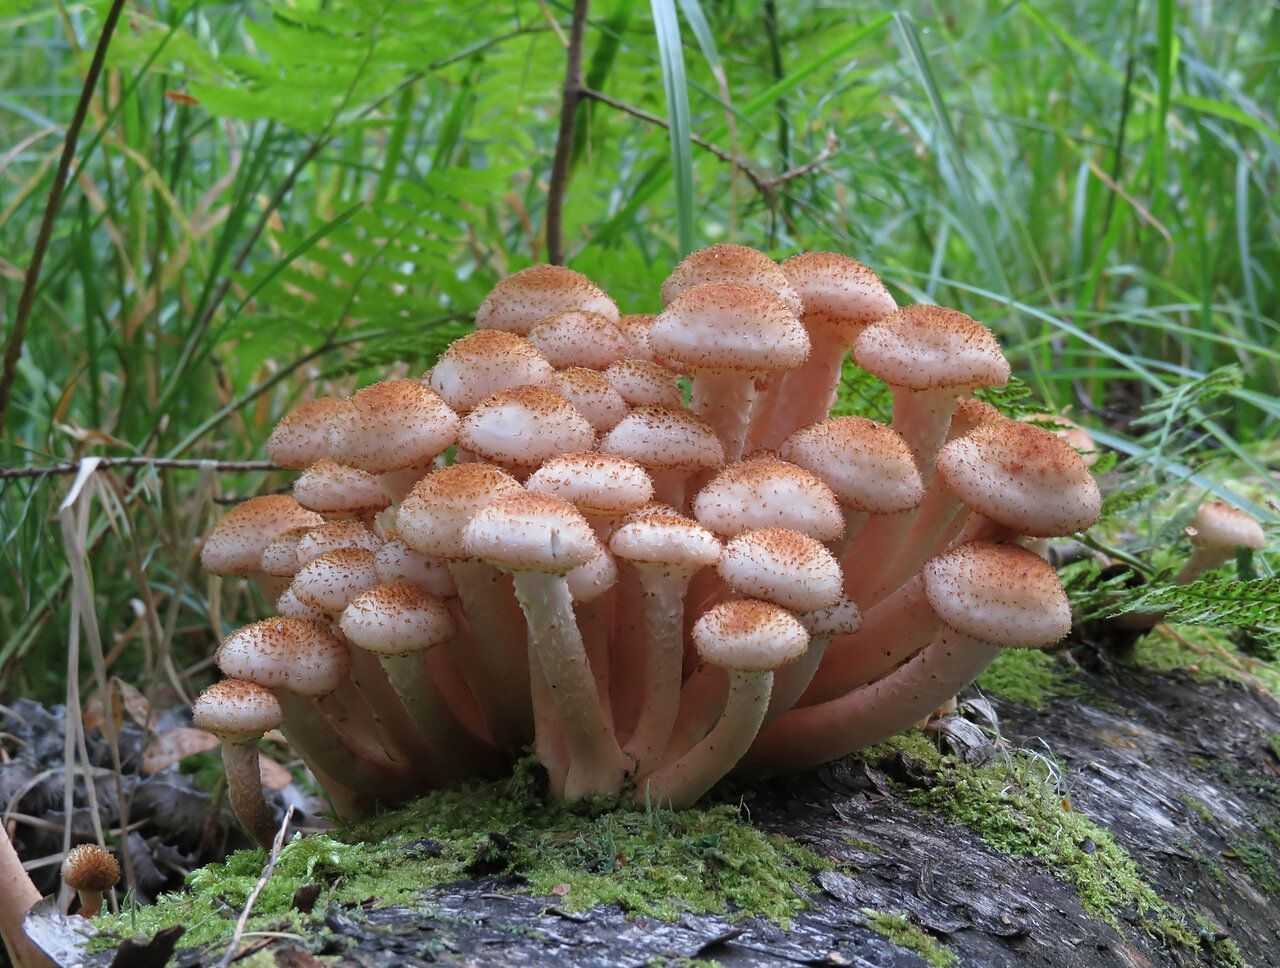 Описание и виды съедобных опят Полезные свойства и вред грибов для организма Опасность ядовитых двойников опят Правила выращивания зимних грибов